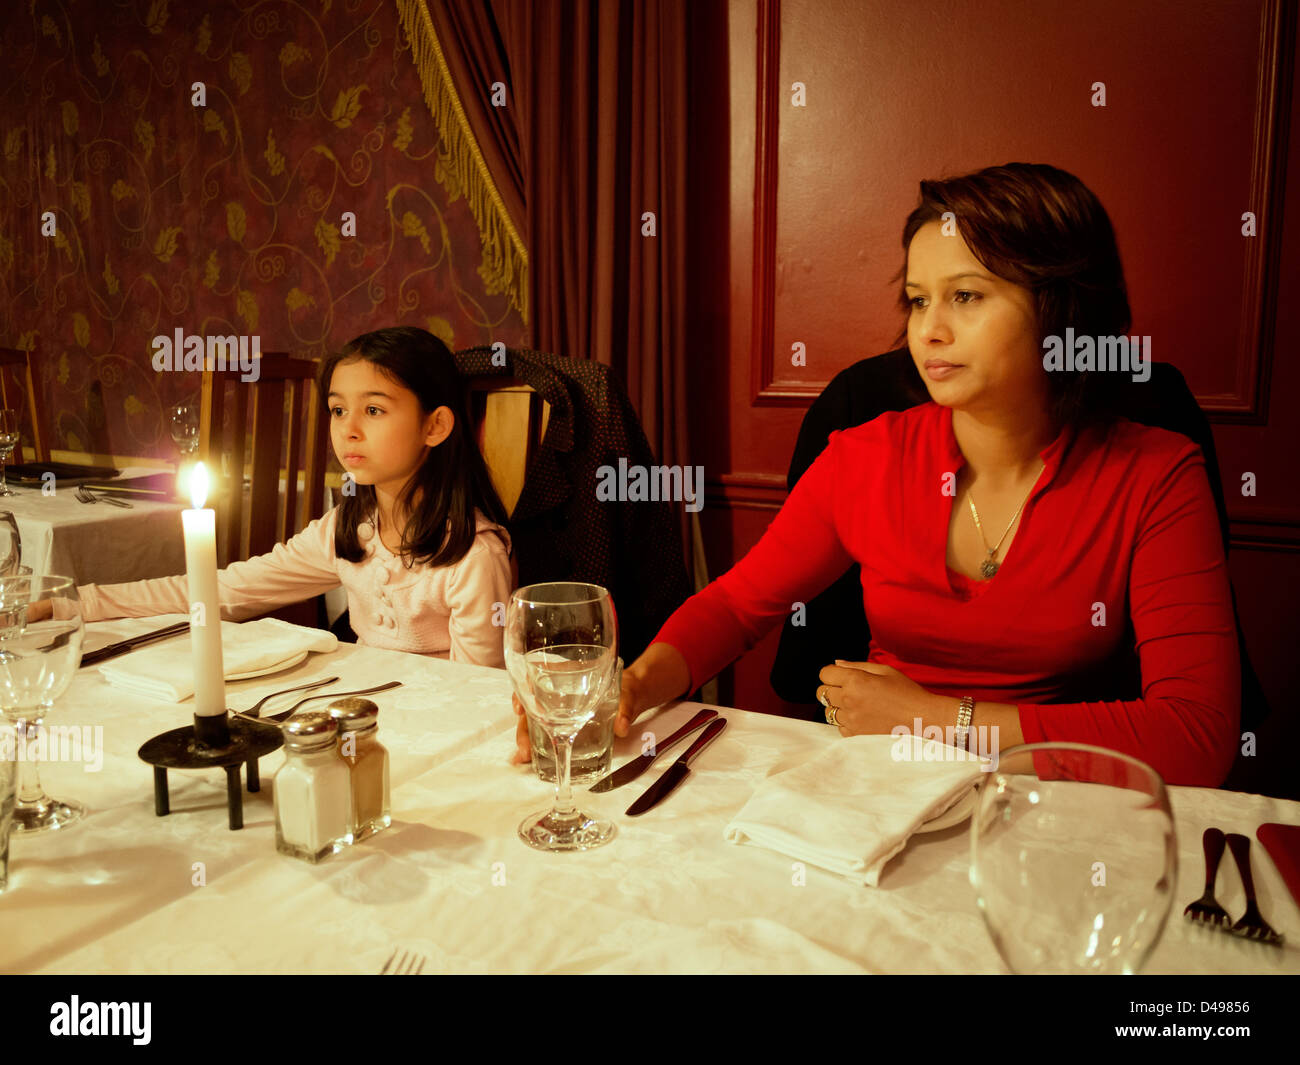 Dinner table at restaurant Stock Photo